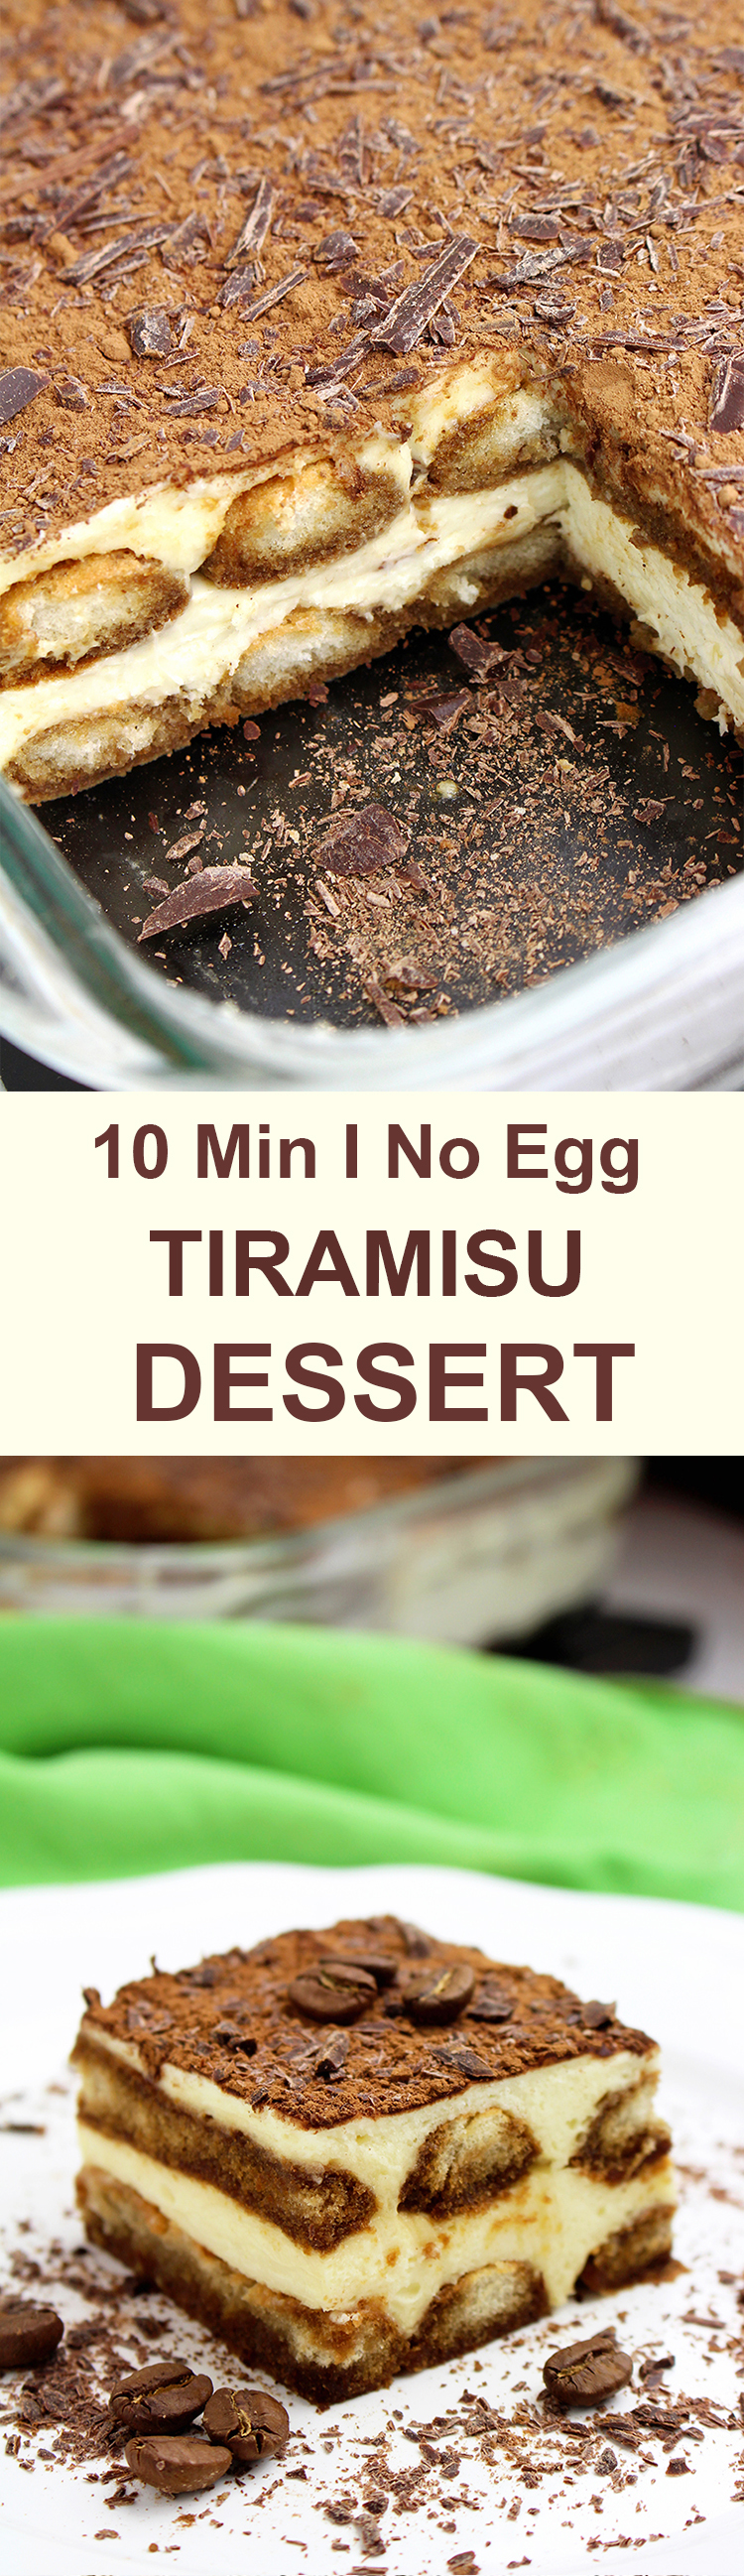 Easy Tiramisu Dessert Recipe